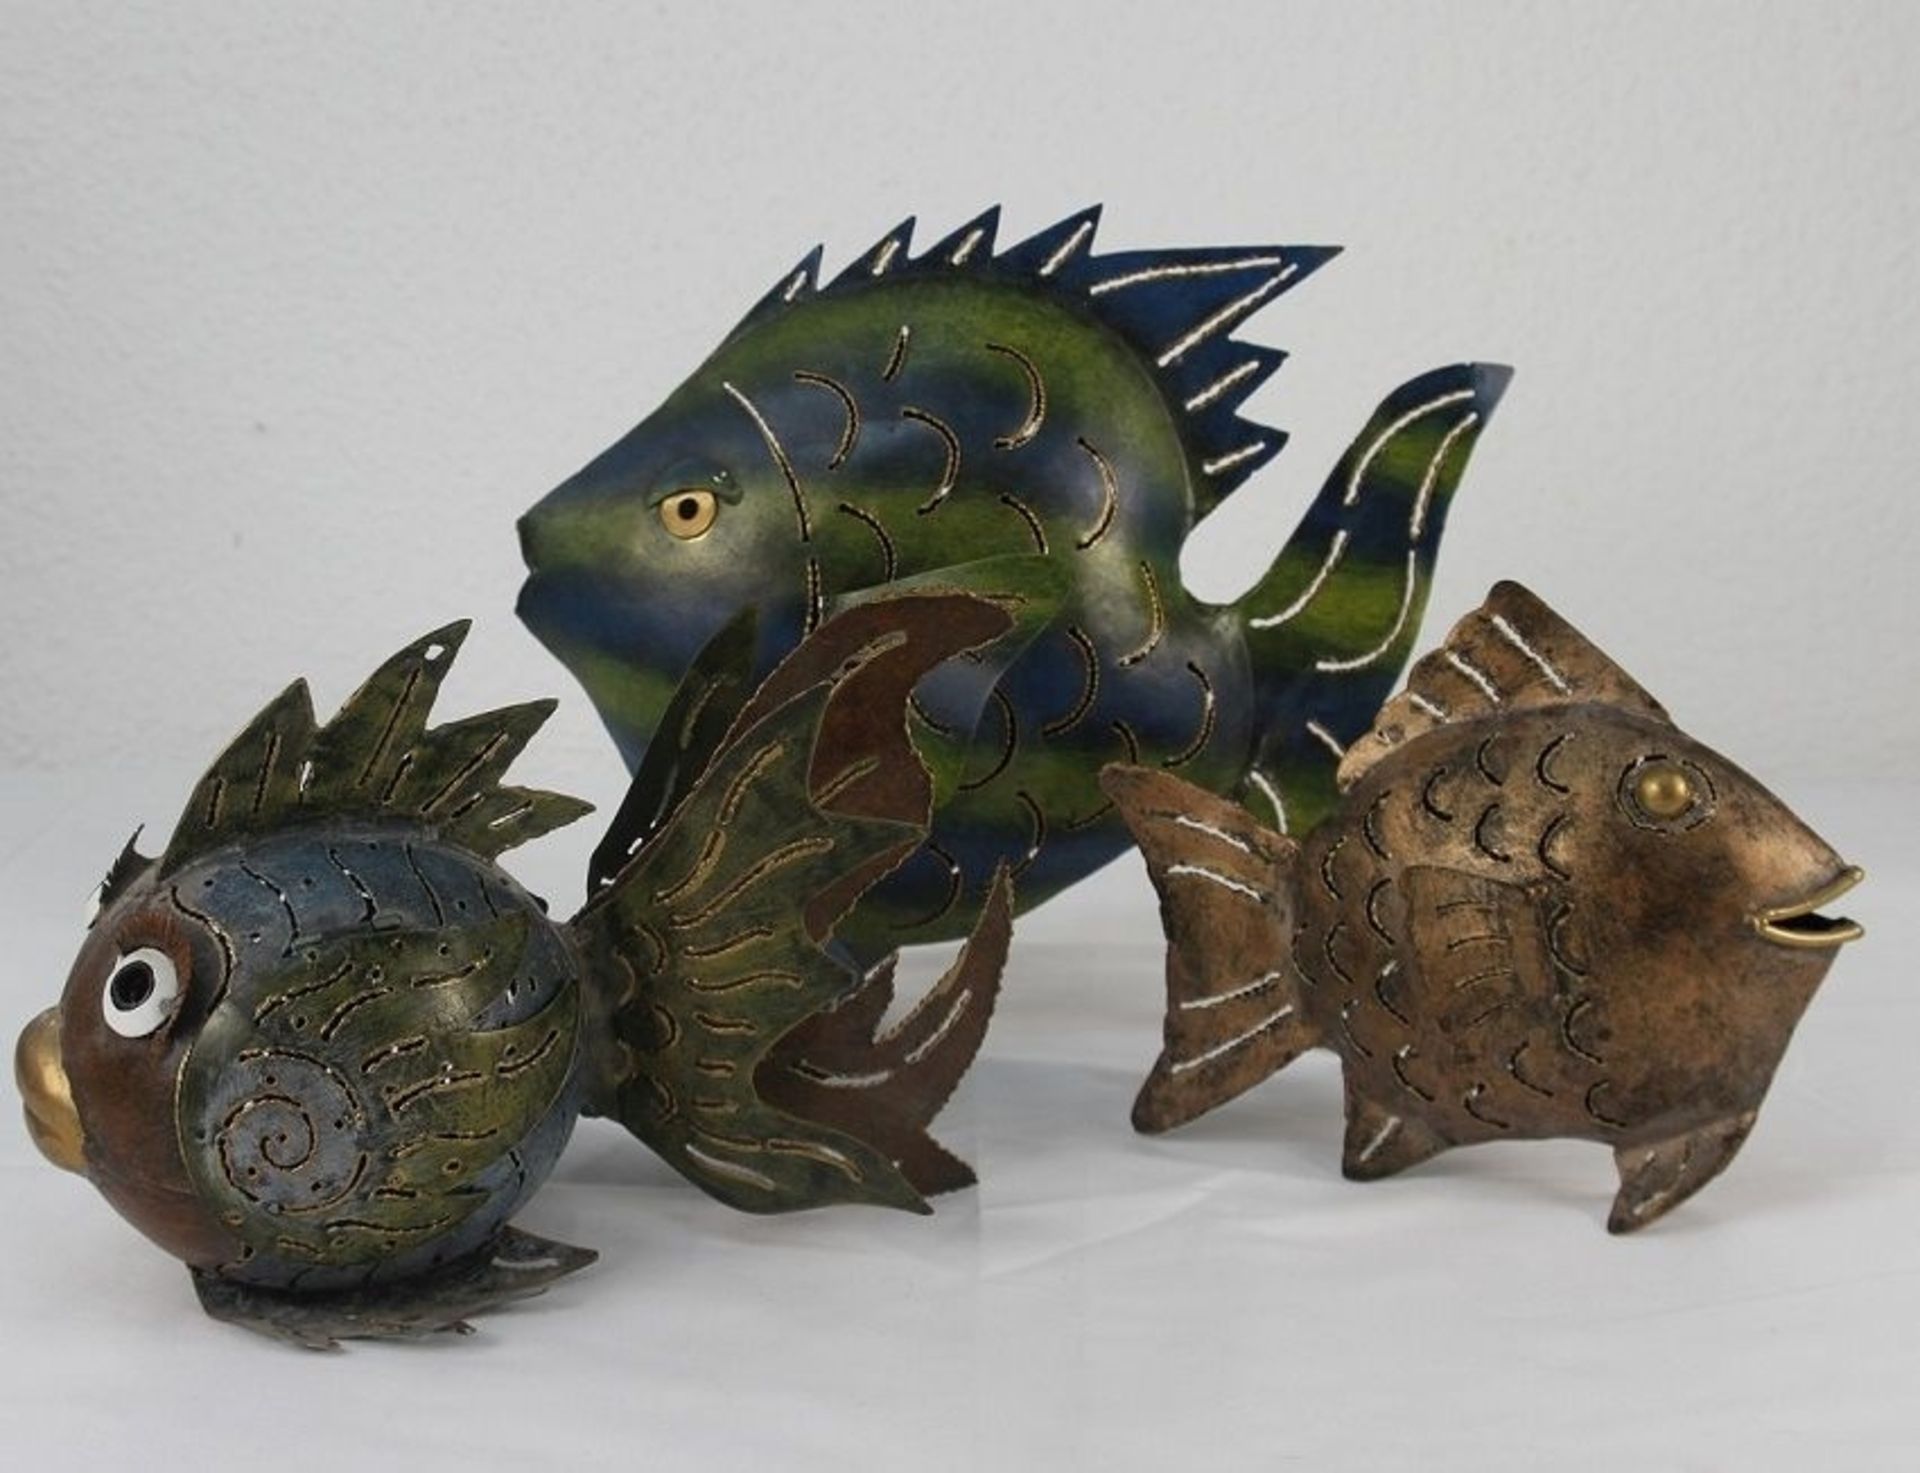 3 dekorative Fische Blechfische Metallfische